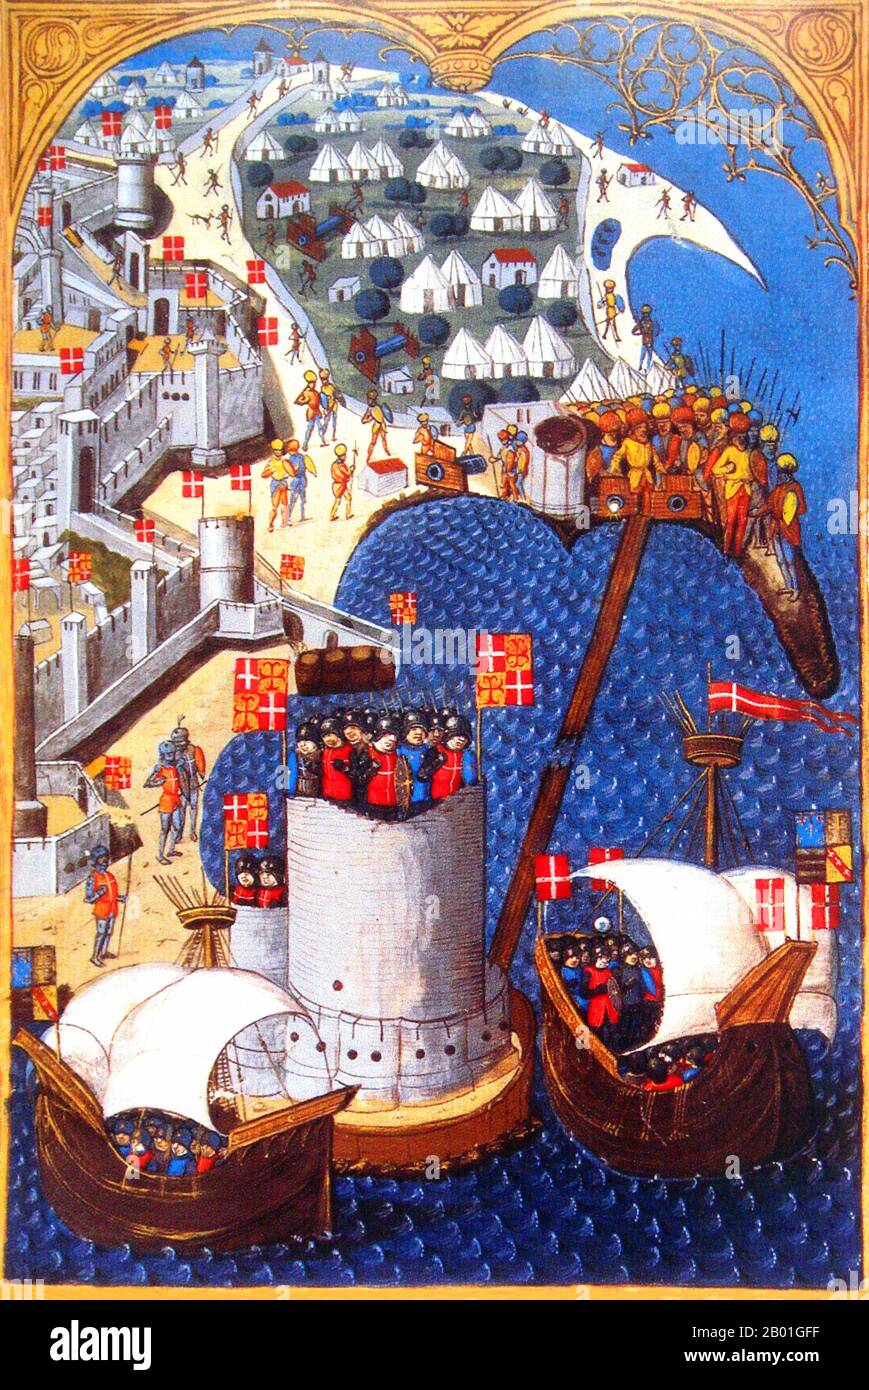 Grèce/Venise: Siège de Rhodes en 1480. Les navires des hospitaliers en première ligne, et le camp turc en arrière-plan (guerres ottomane-vénitienne). Illumination par Maître du Cardinal de Bourbon (fl. 1470-1500), c. 1483. Le 23 mai 1480, une flotte ottomane de 160 navires apparut devant Rhodes, dans le golfe de Trianda, avec une armée de 70 000 hommes sous le commandement de Gedik Ahmed Pasha ou Mesih Pasha. La garnison hospitalière des chevaliers était dirigée par le Grand Maître Pierre d'Aubusson. Les chevaliers furent renforcés de France par 500 chevaliers et 2 000 soldats sous le frère d'Aubusson Antoine. Banque D'Images